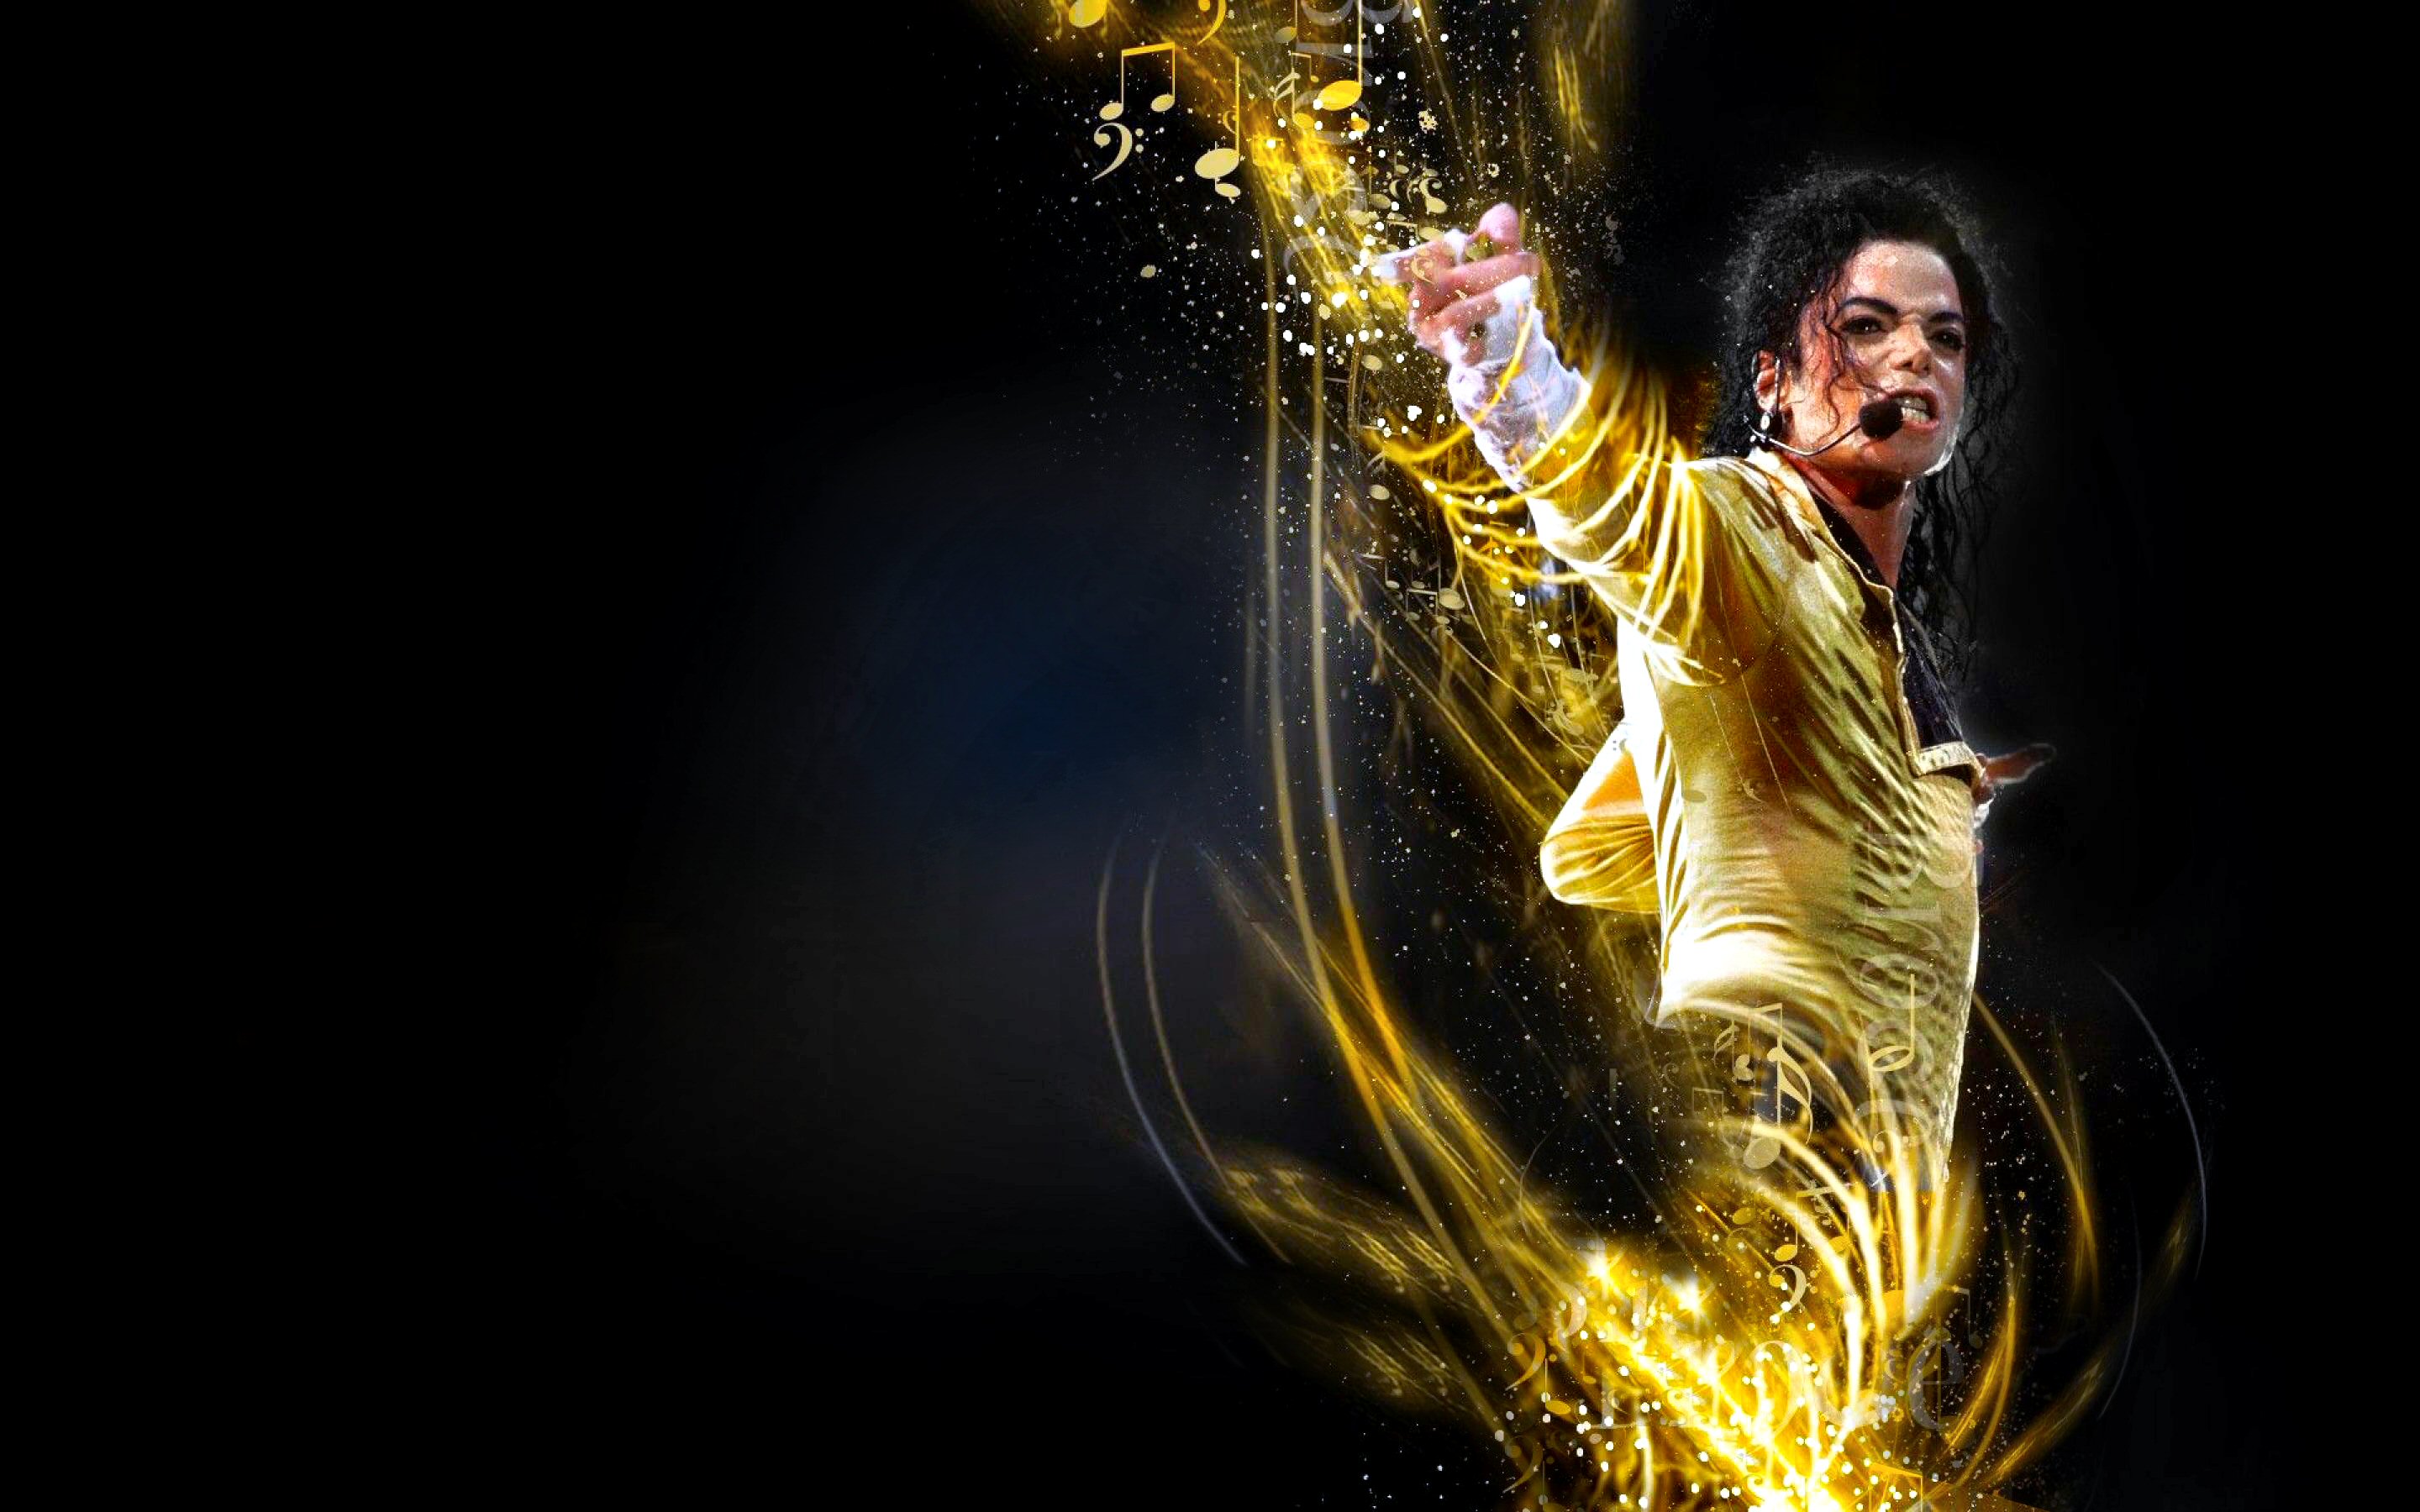 Michael Jackson Picture by Ahmet Sürek